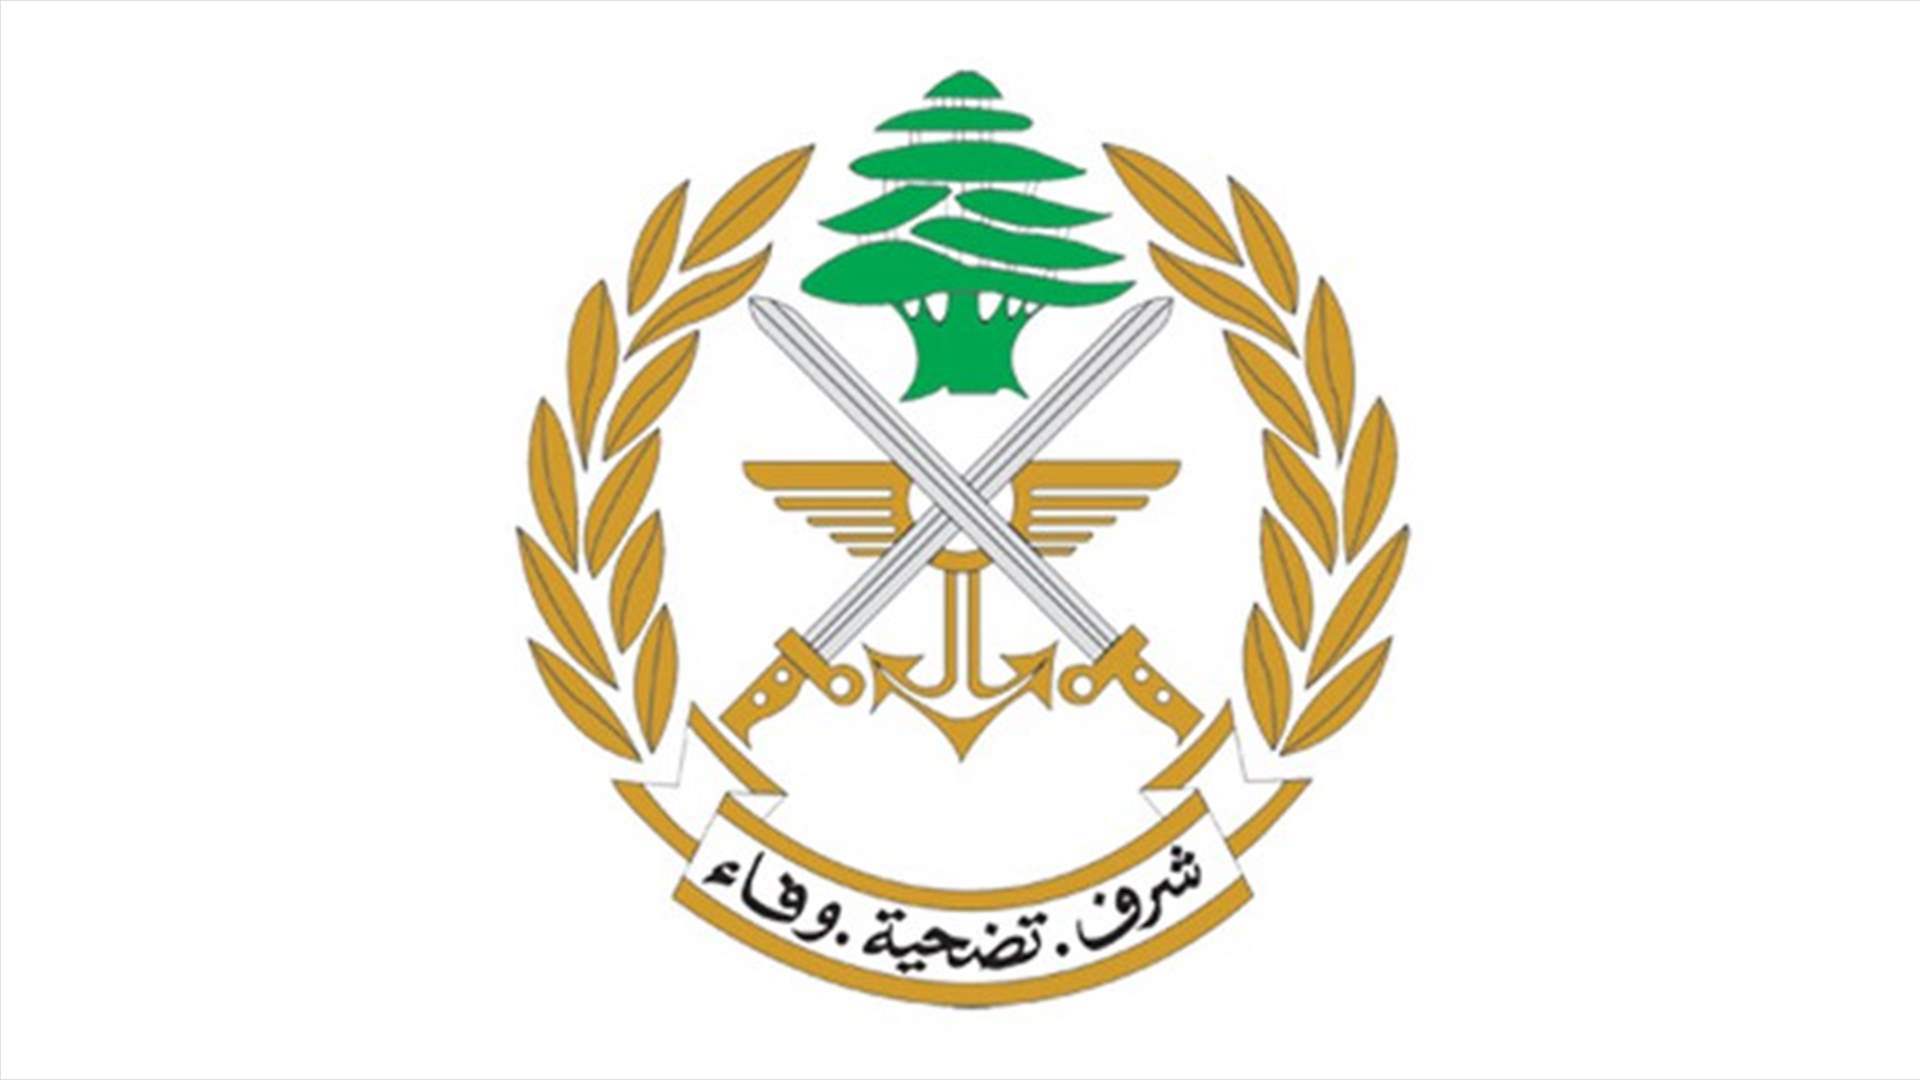 الجيش: توقيف 10 مواطنين لتورطهم في إشكال في بلدة برج العرب - عكار